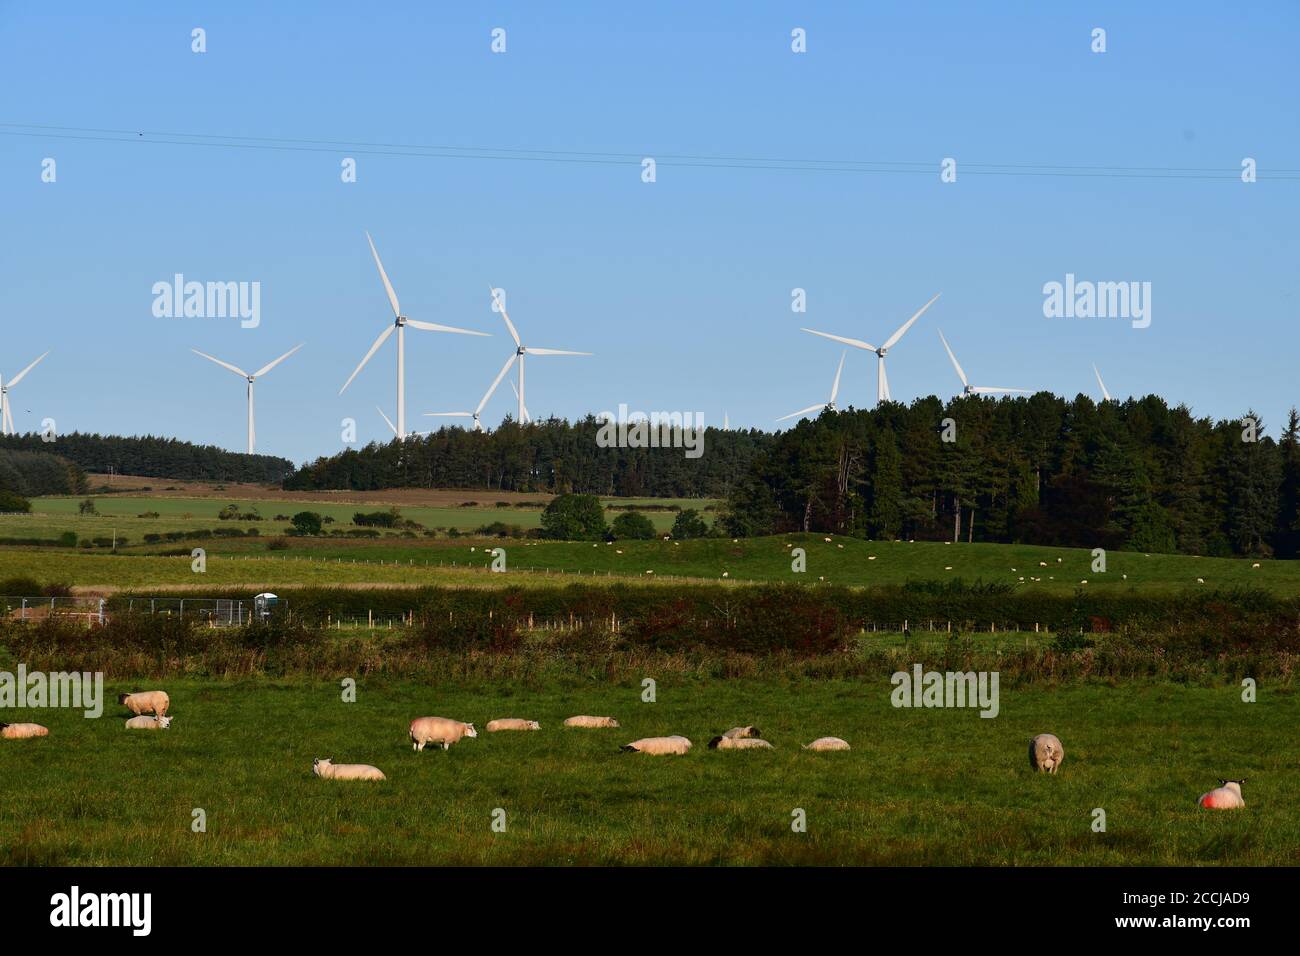 Eine Skyline von Windkraftanlagen in ländlicher landwirtschaftlicher Umgebung, die den Einsatz umweltfreundlicher nachhaltiger Energieerzeugung zeigt. Stockfoto